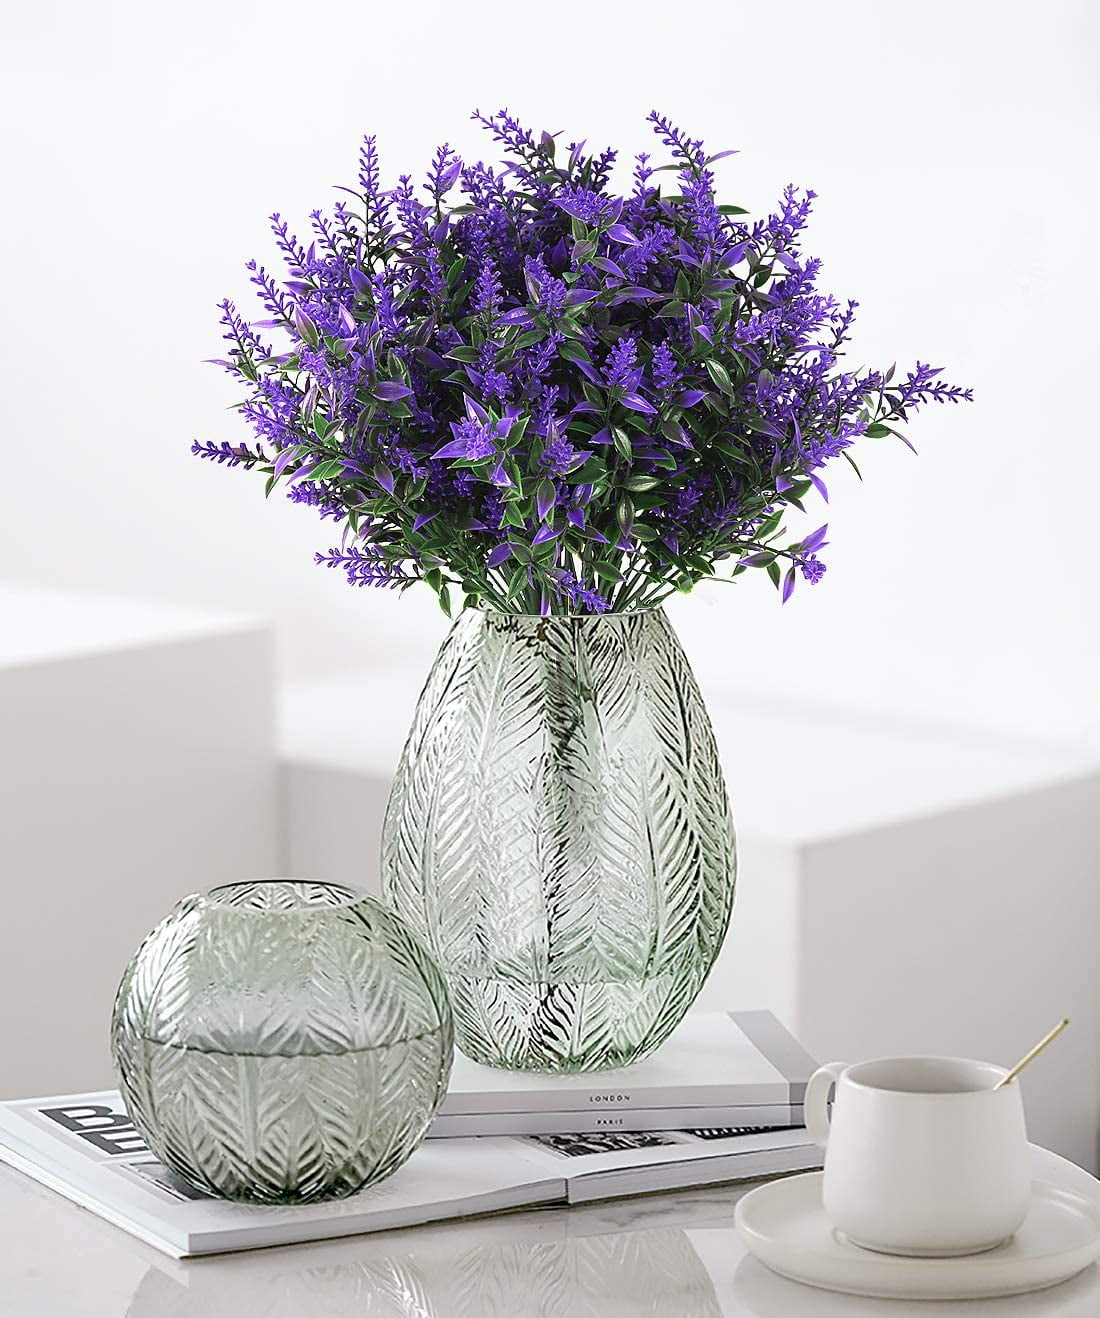 RECUTMS 8 Bundles Purple Artificial Flowers Plants Lavender Flower